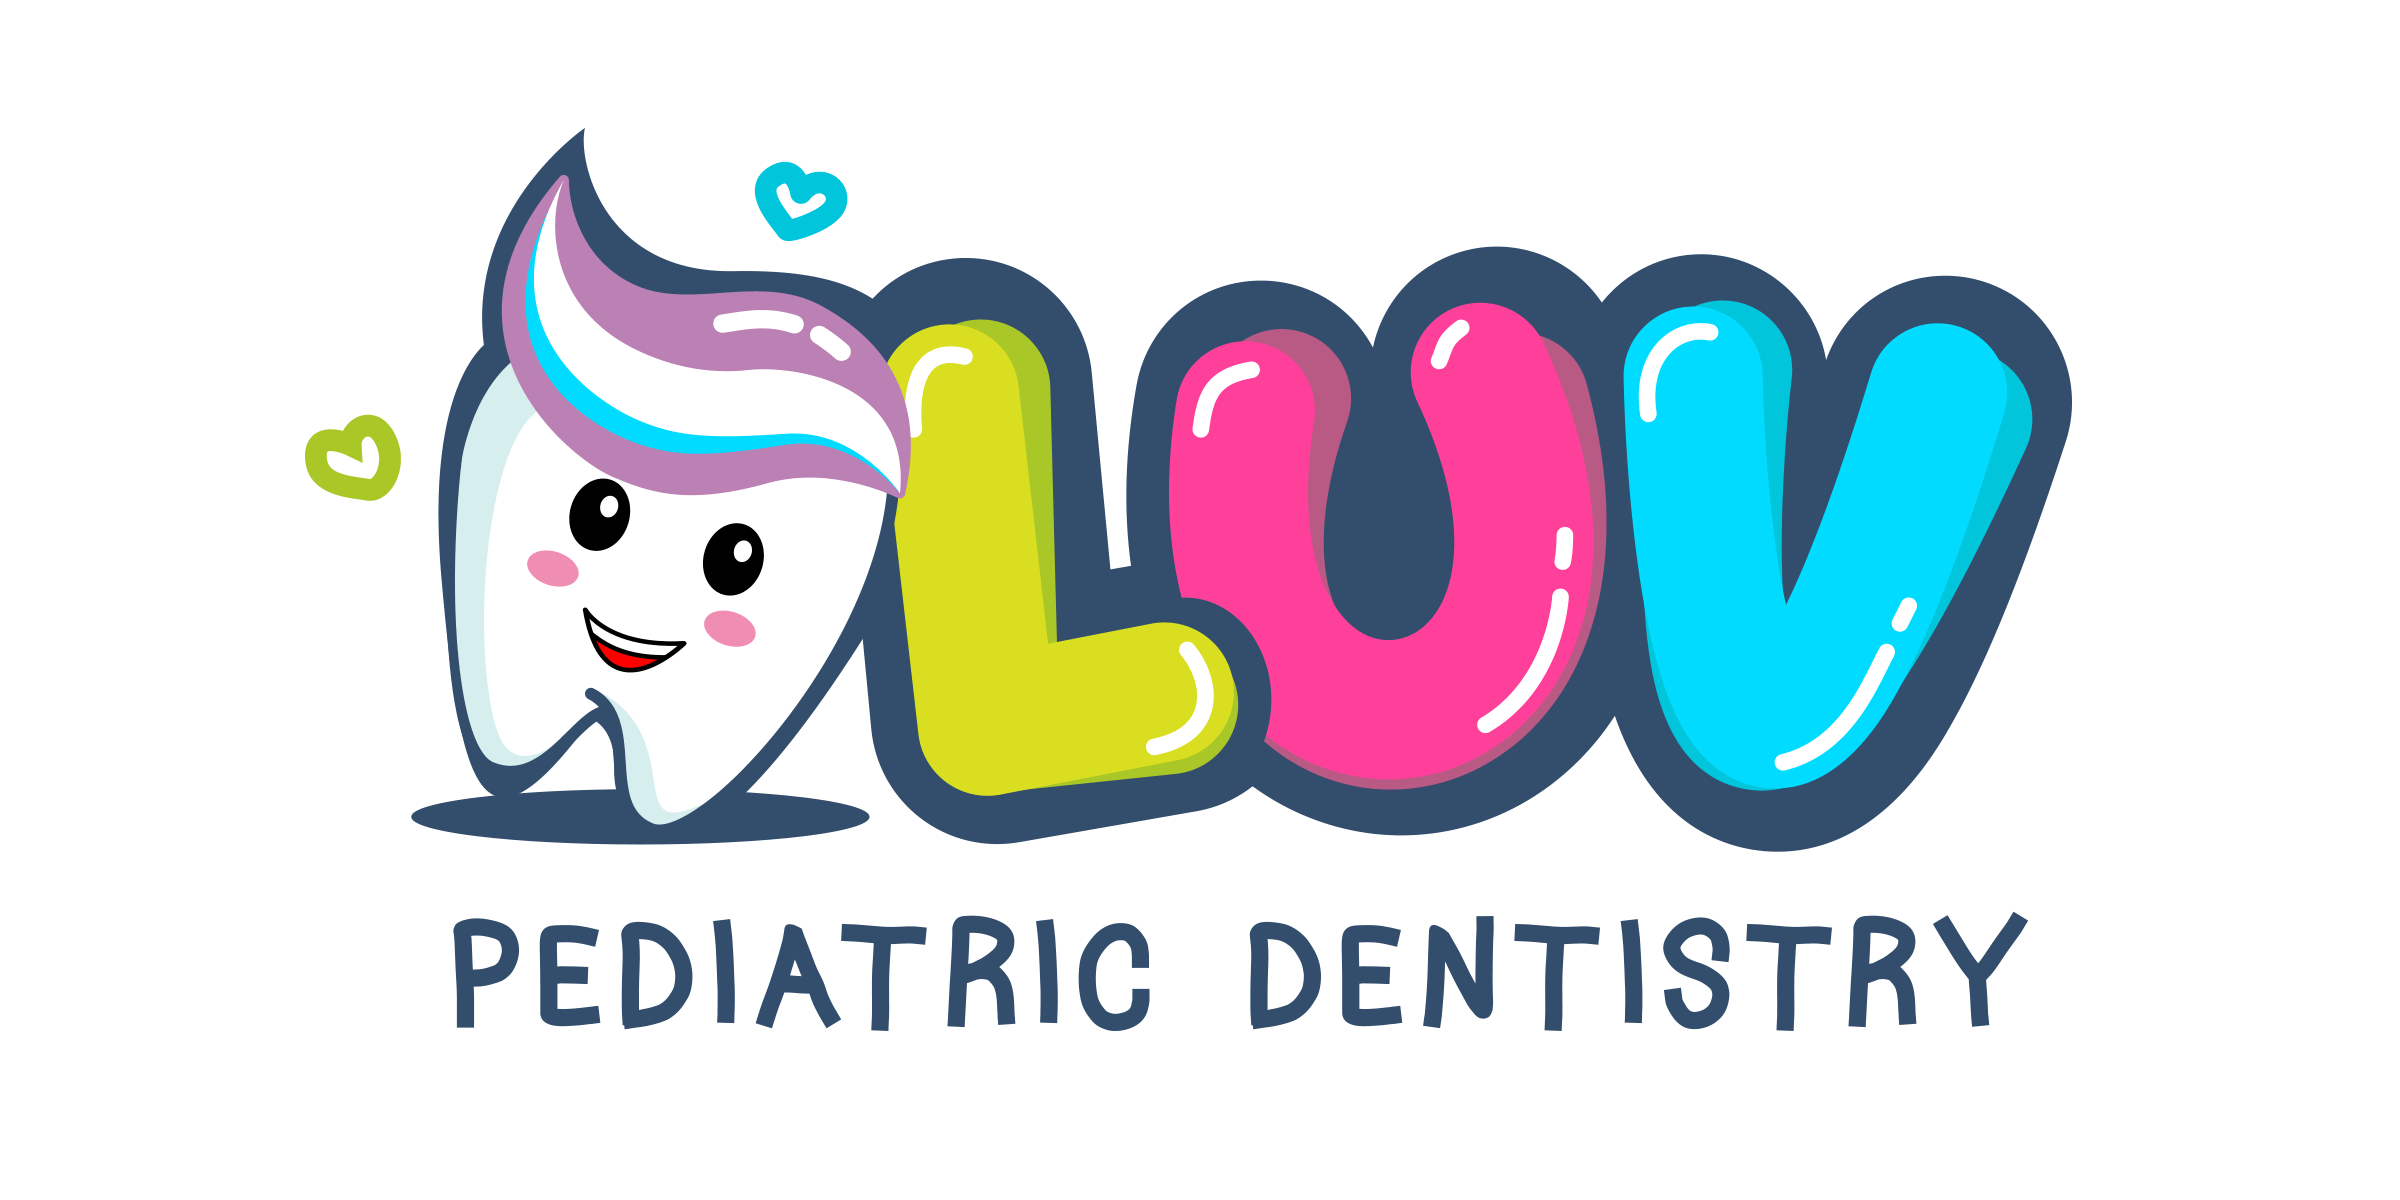 LUV Pediatric Dentistry